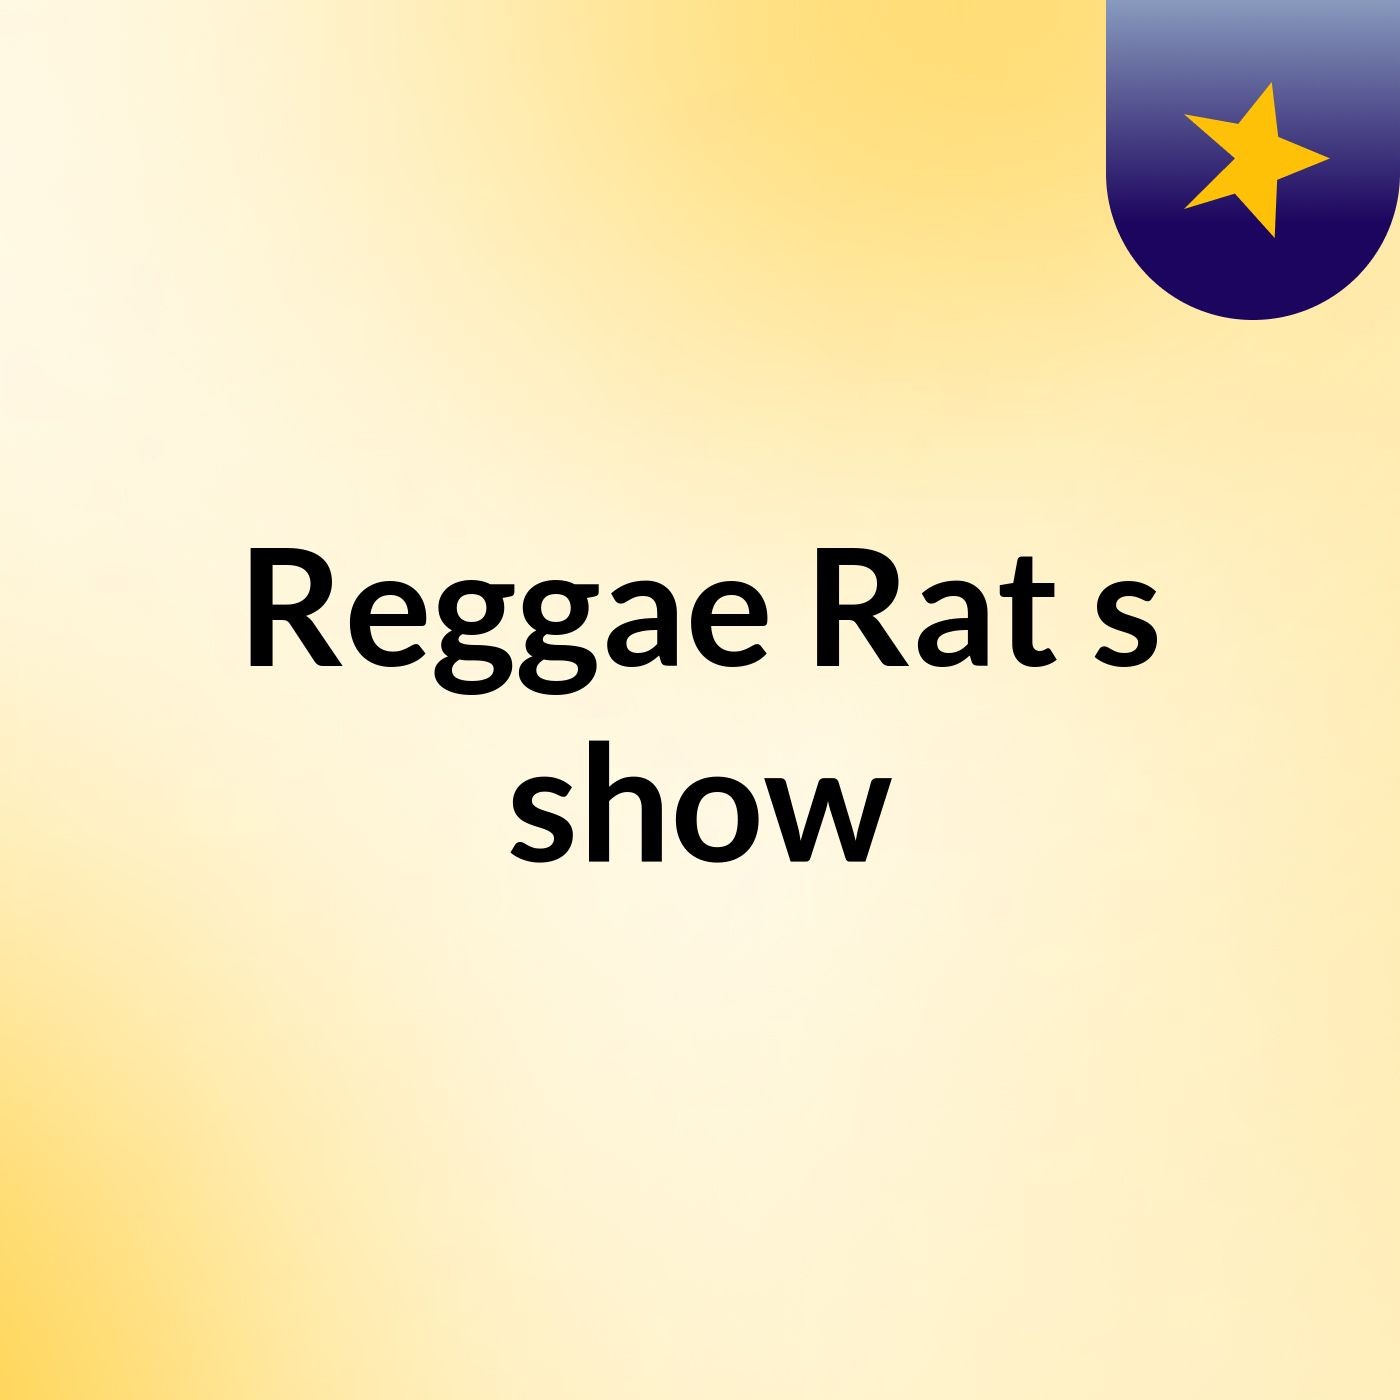 Reggae Rat